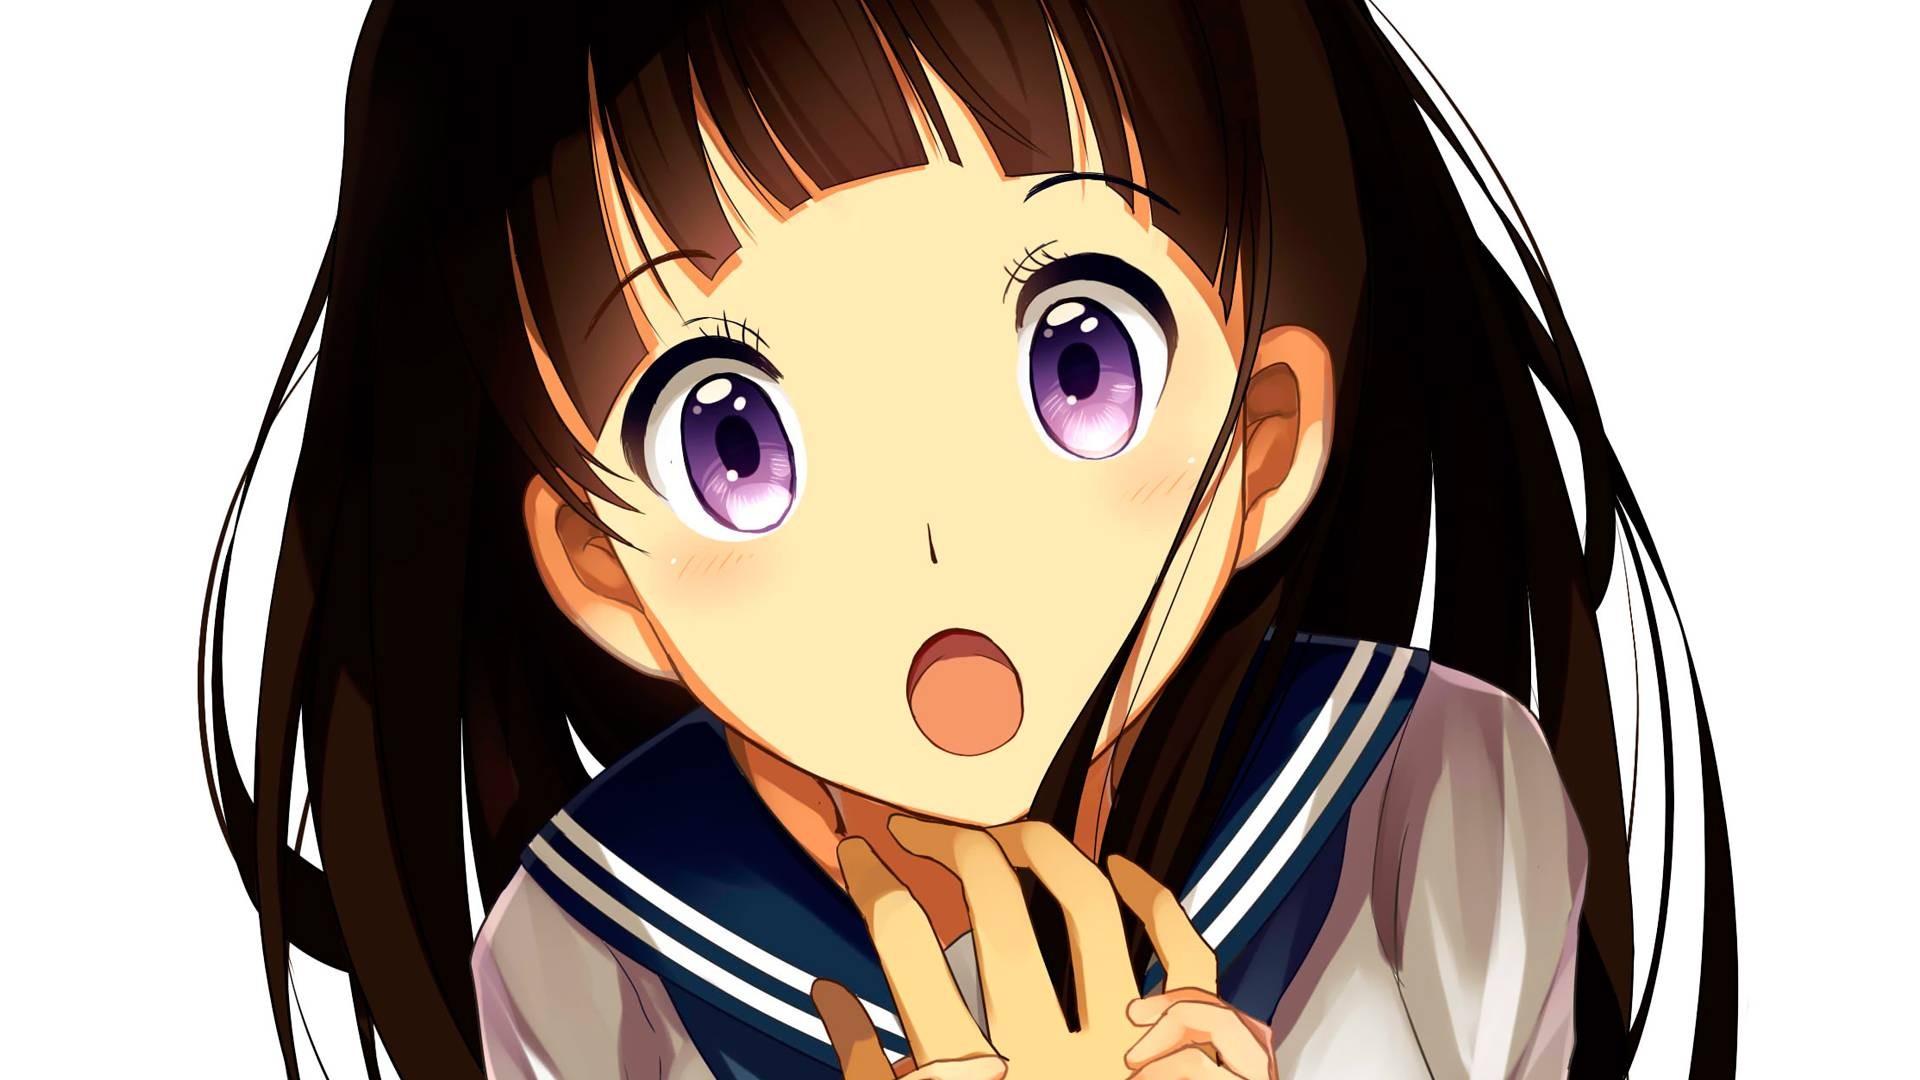 Anime 1920x1080 Hyouka anime anime girls Chitanda Eru purple eyes open mouth simple background white background